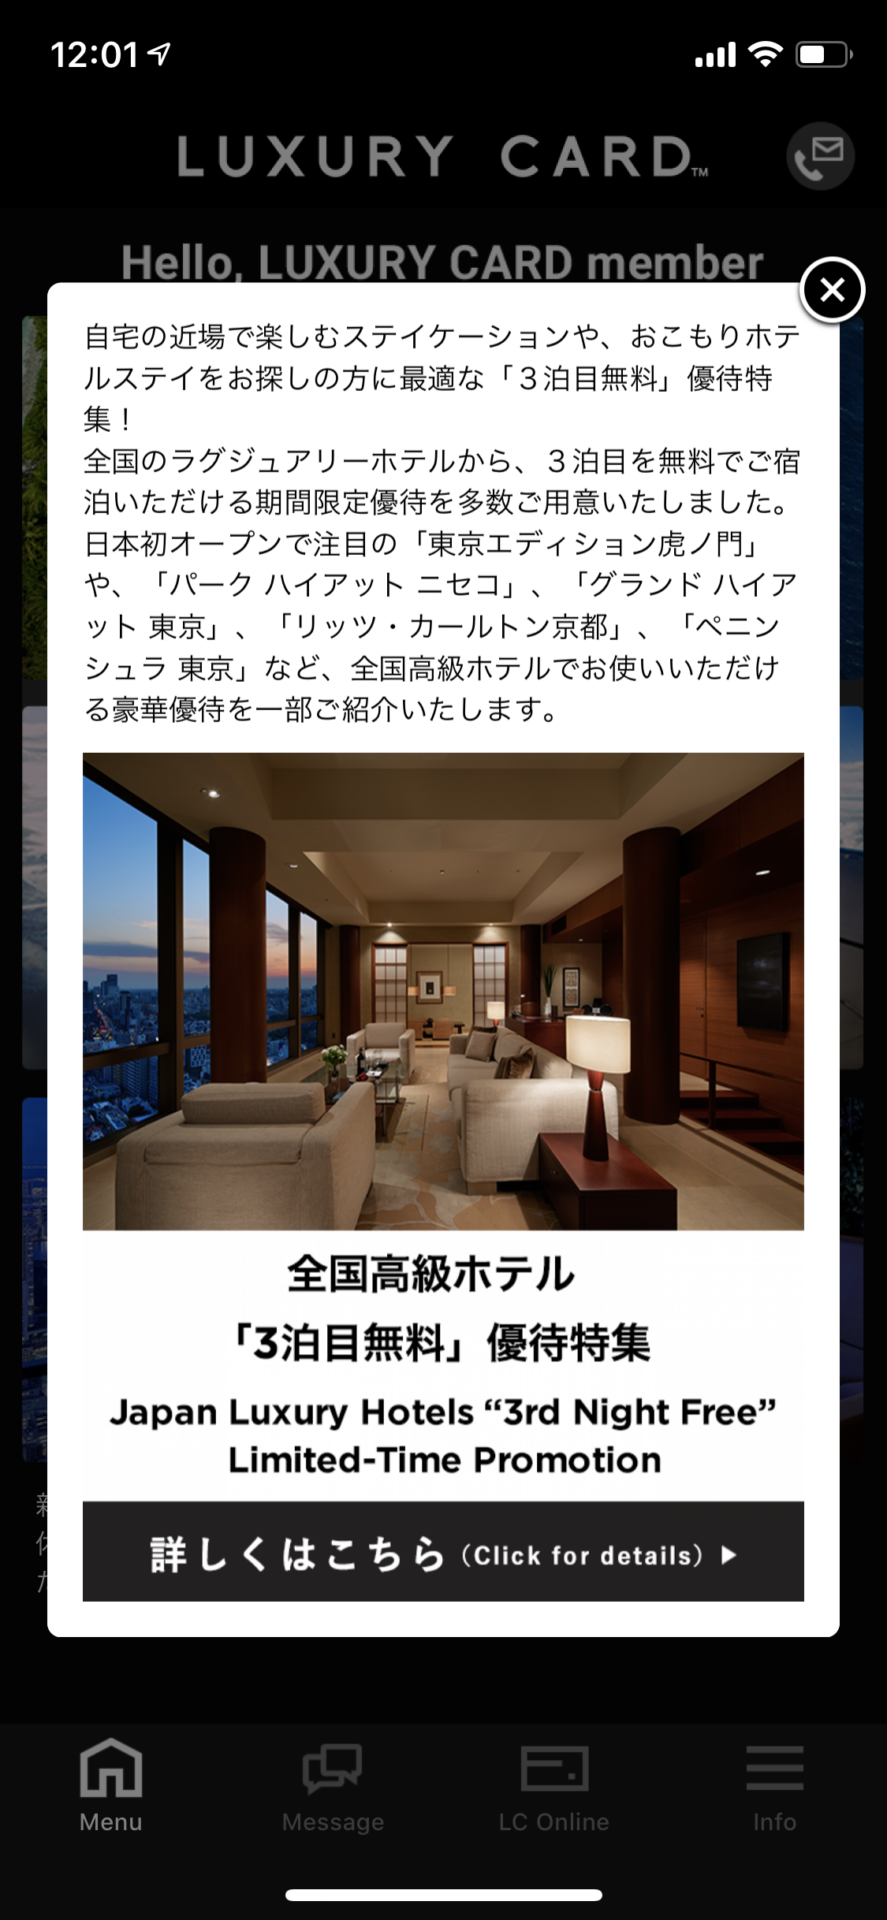 ラグジュアリカードの高級ホテル3泊目無料キャンペーン (2)